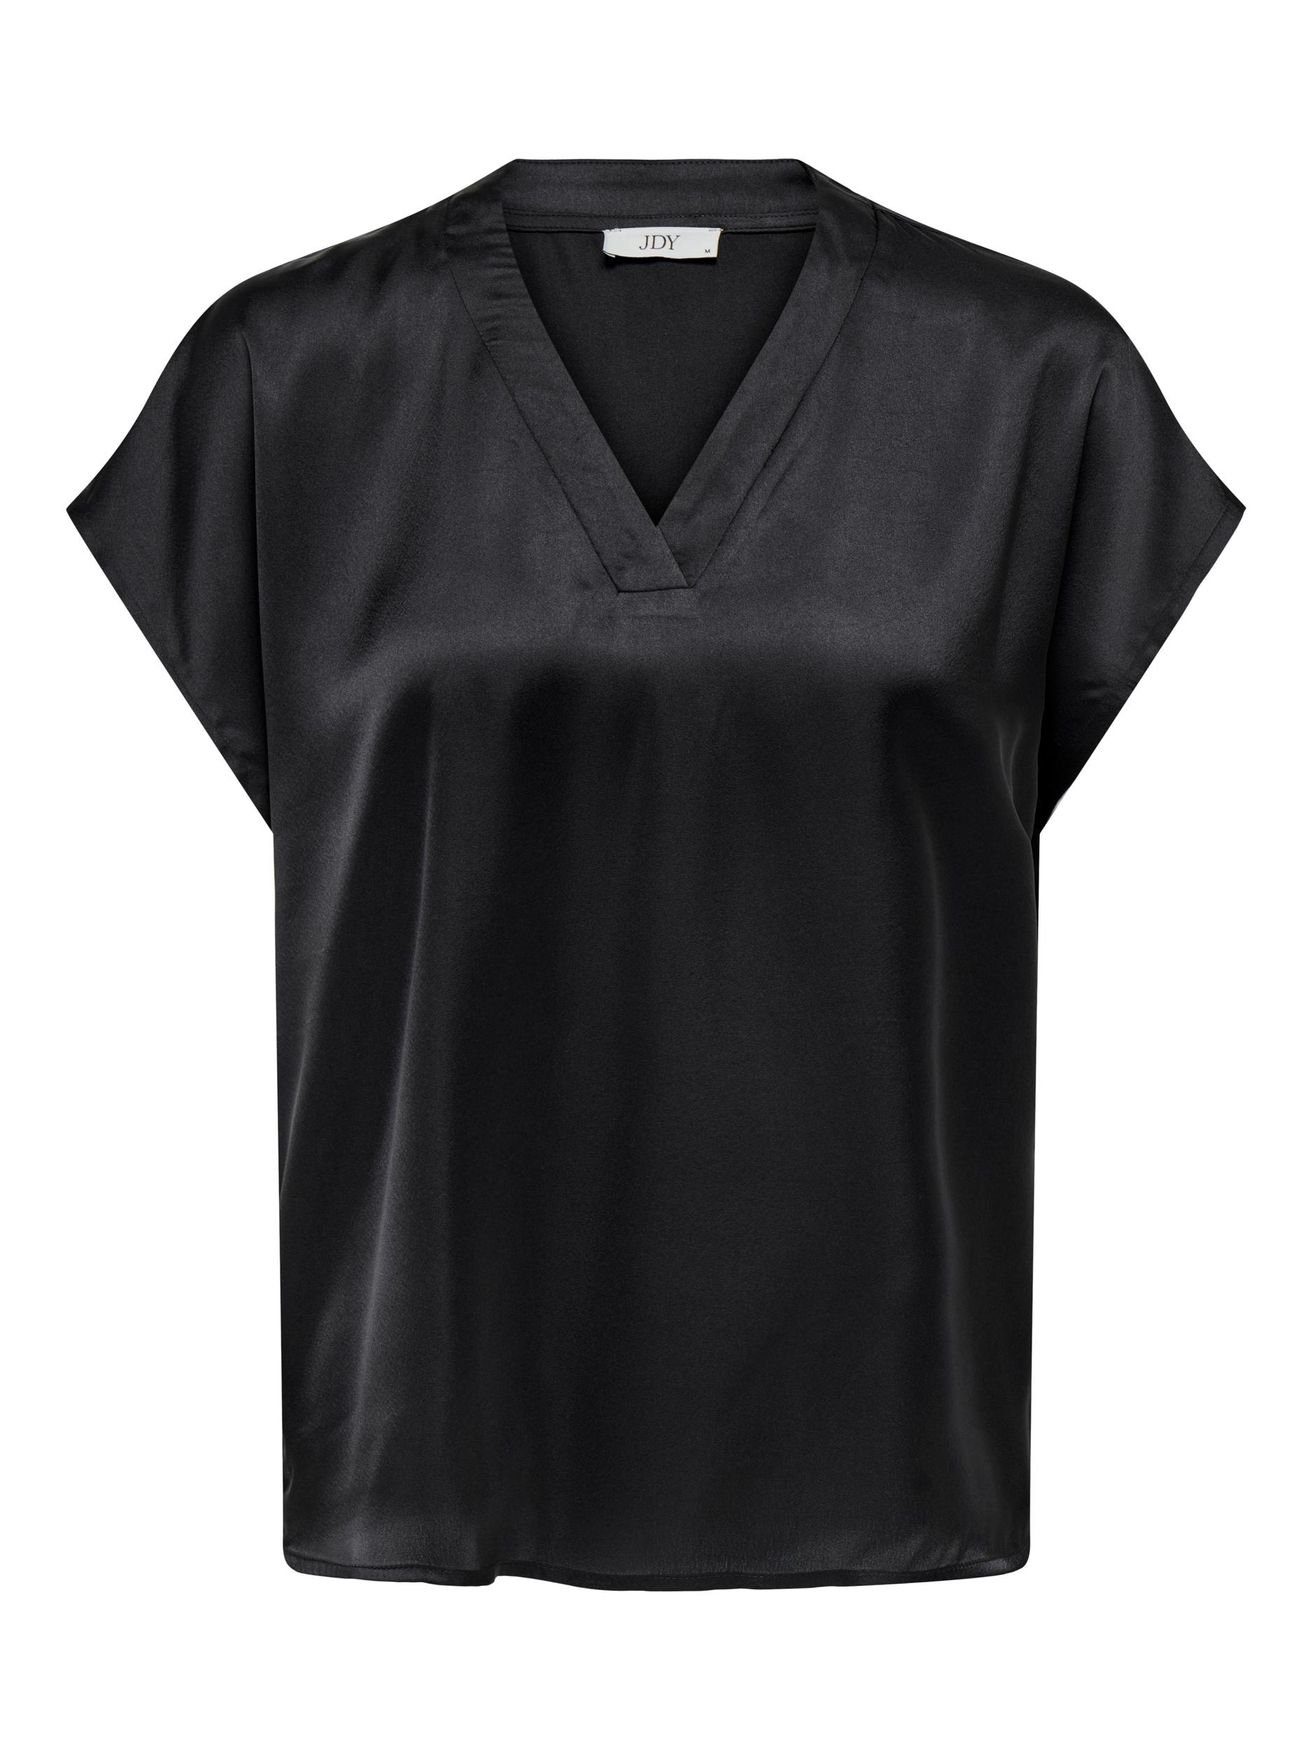 Kurzarm T-Shirt T-Shirt V-Ausschnitt Schwarz-2 Bluse 5384 Business JDYFIFI in de YONG JACQUELINE